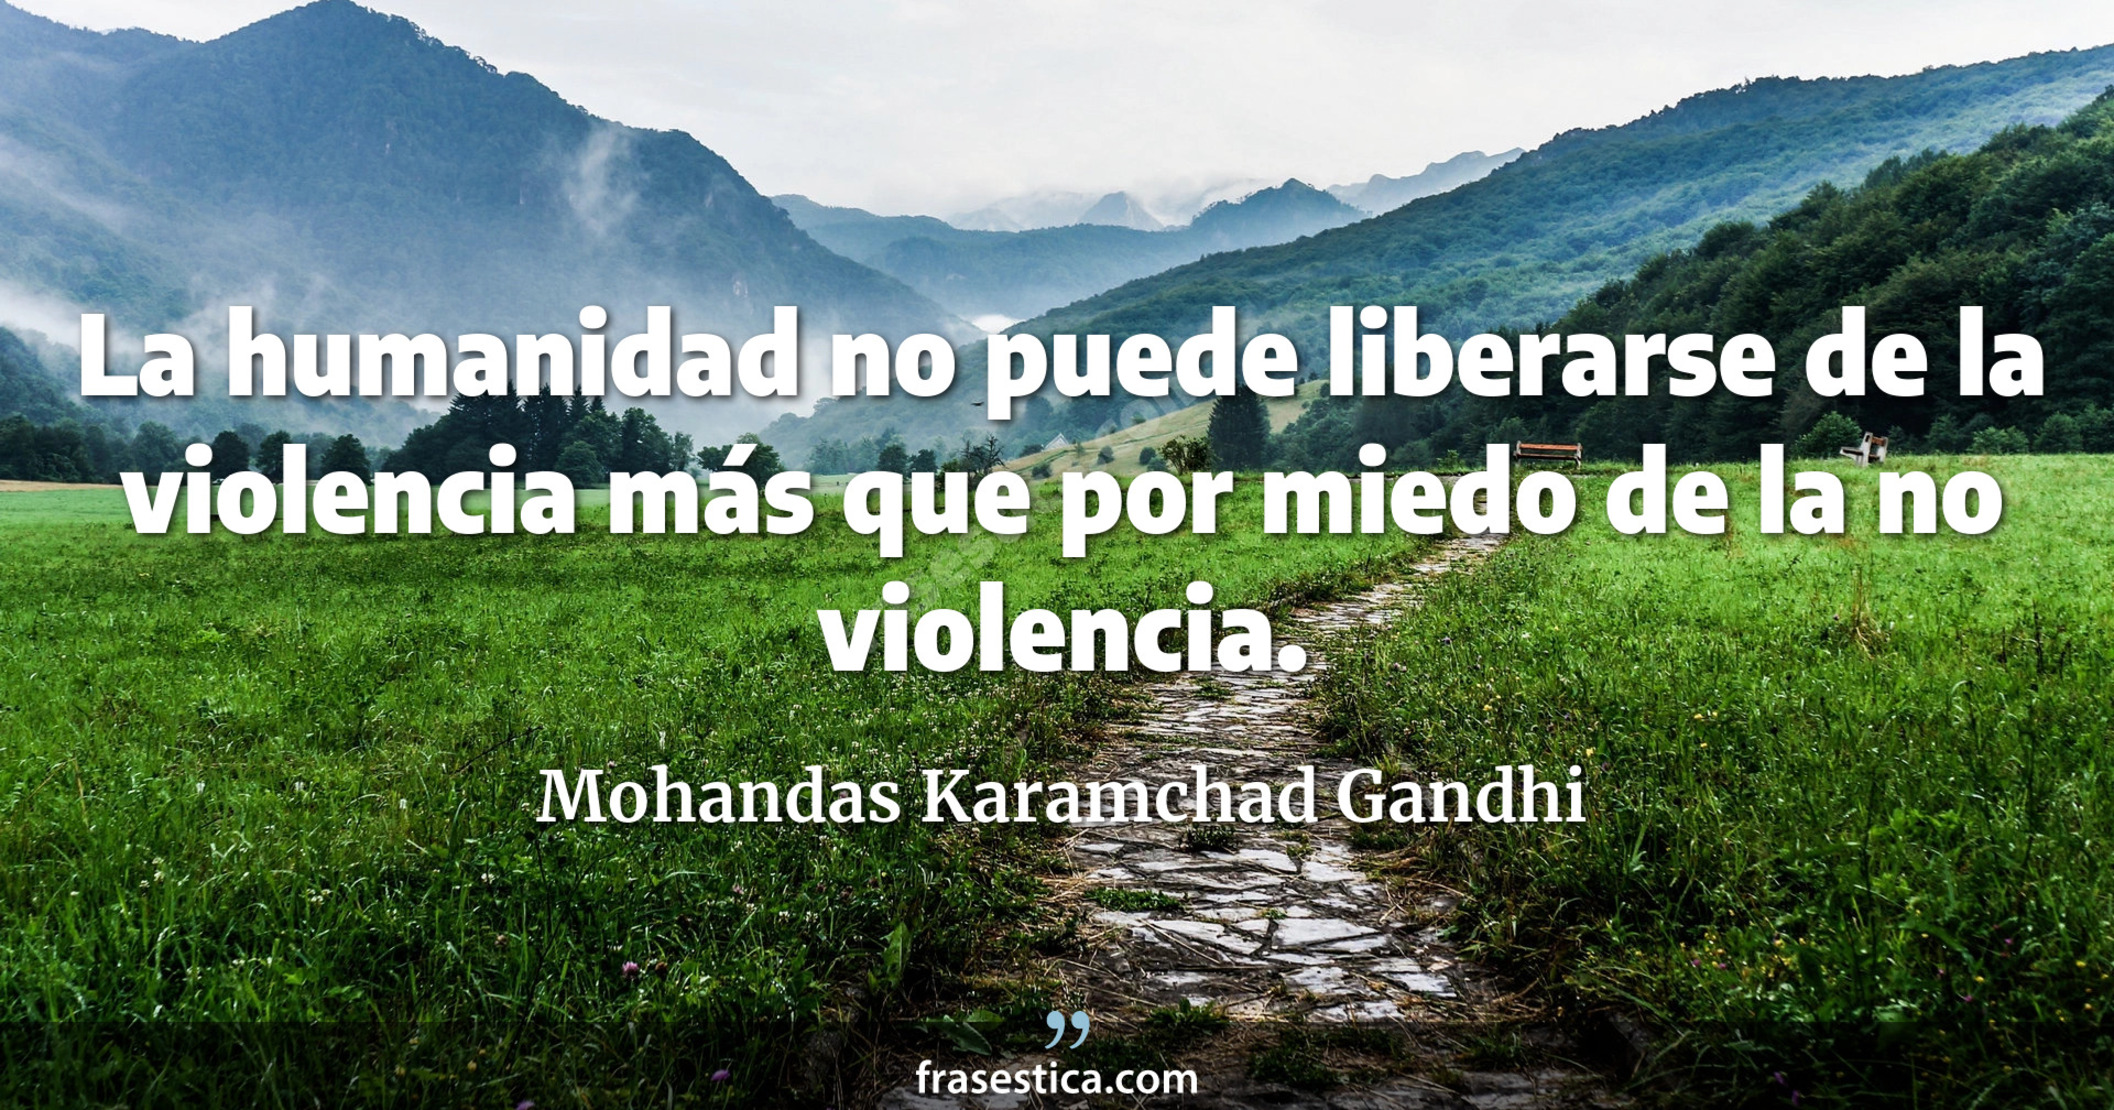 La humanidad no puede liberarse de la violencia más que por miedo de la no violencia. - Mohandas Karamchad Gandhi